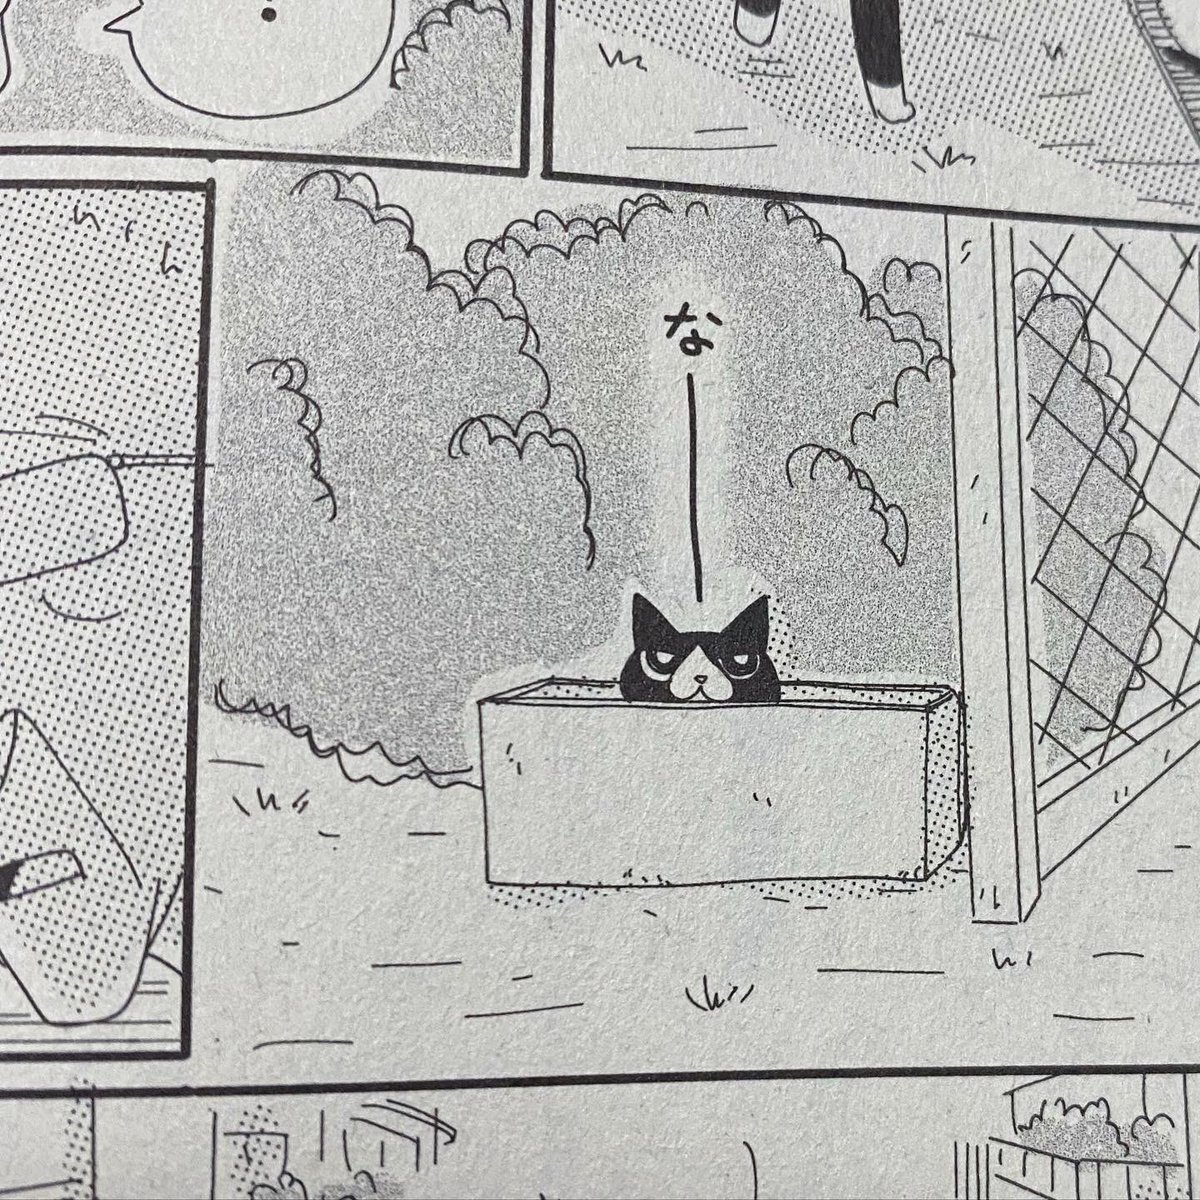 ねこぱんち7月号、本日発売です。
今回の じっちゃんと猫の住む街はチビッ子多喜ちゃん…がモデルのサルちゃん出てきます(なぜサルと名付けたのか謎)
よろしくお願いいたします! 